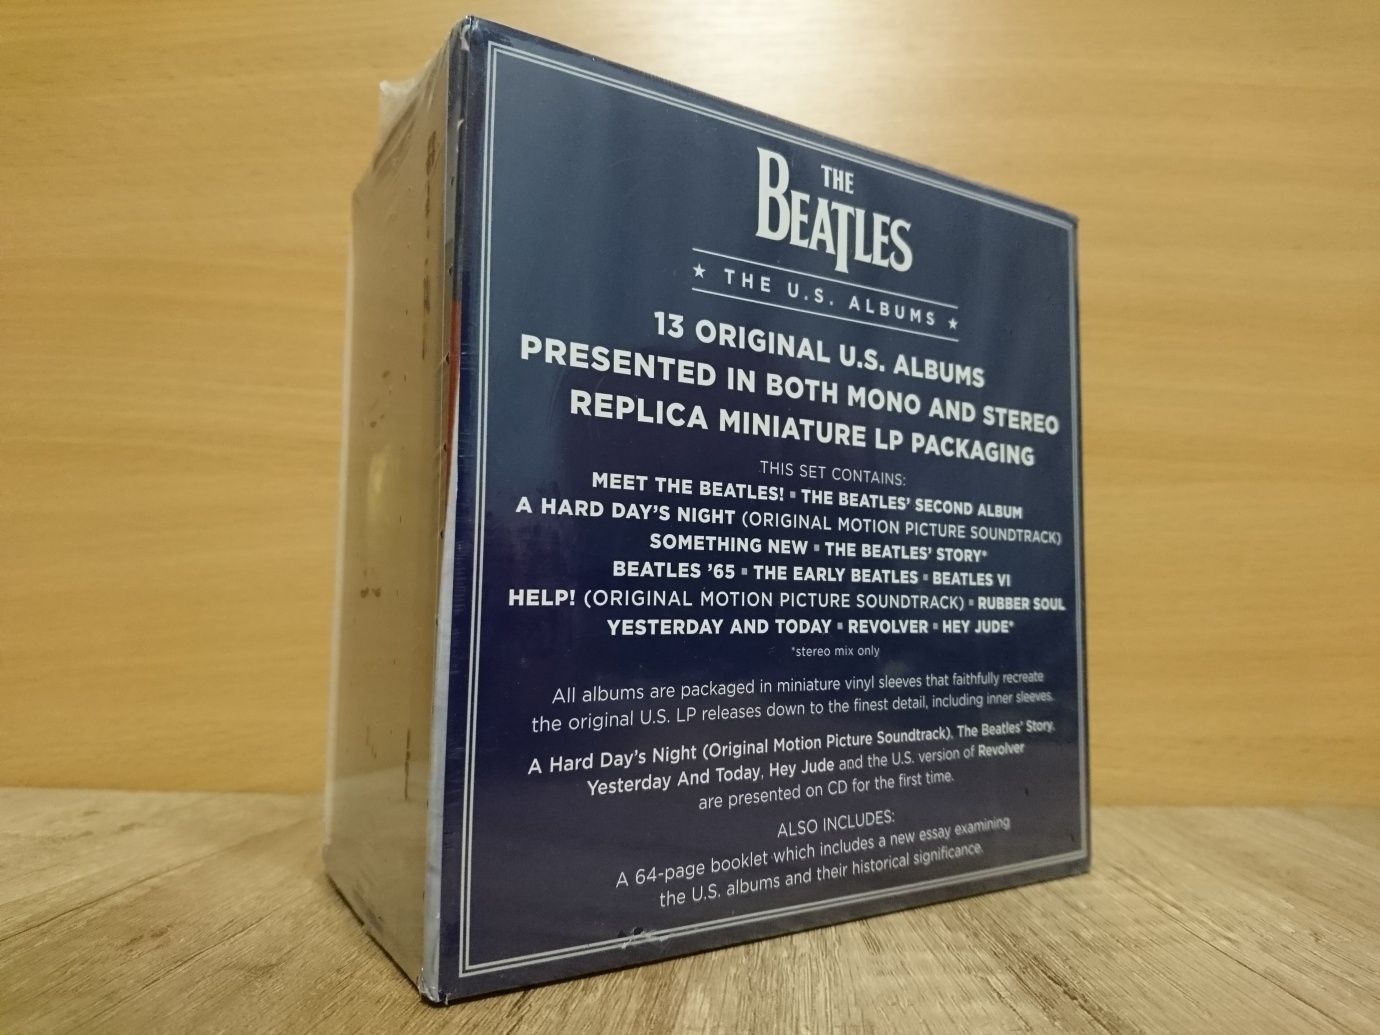 The Beatles - U.S. Albums 13 CD (коллекционное издание для рынка США)